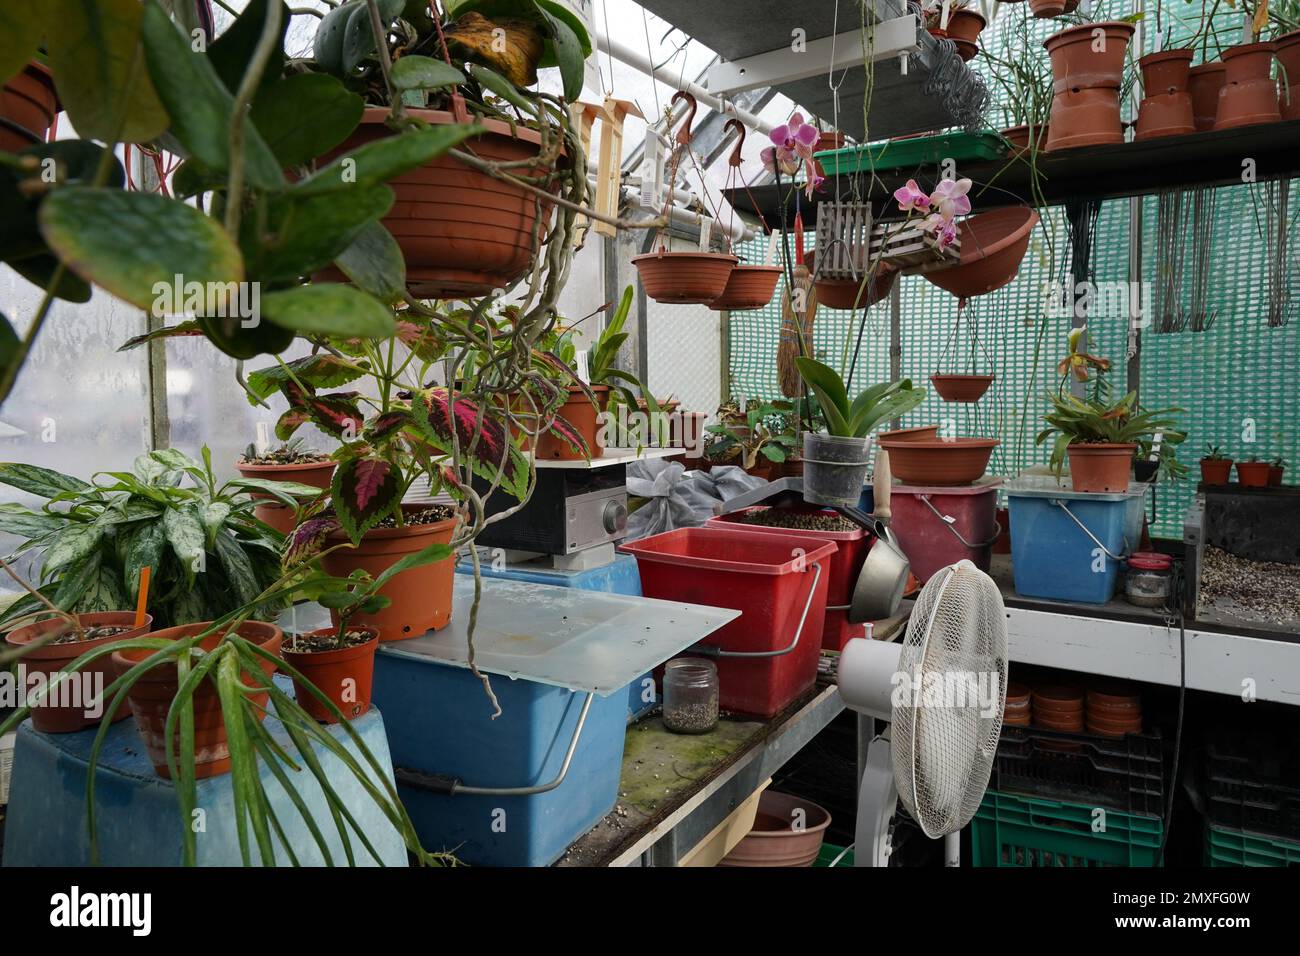 Gewächshaus, das als Arbeitsraum für den Anbau von Orchideen und anderen exotischen Pflanzen für einen botanischen Garten angelegt ist. Stockfoto